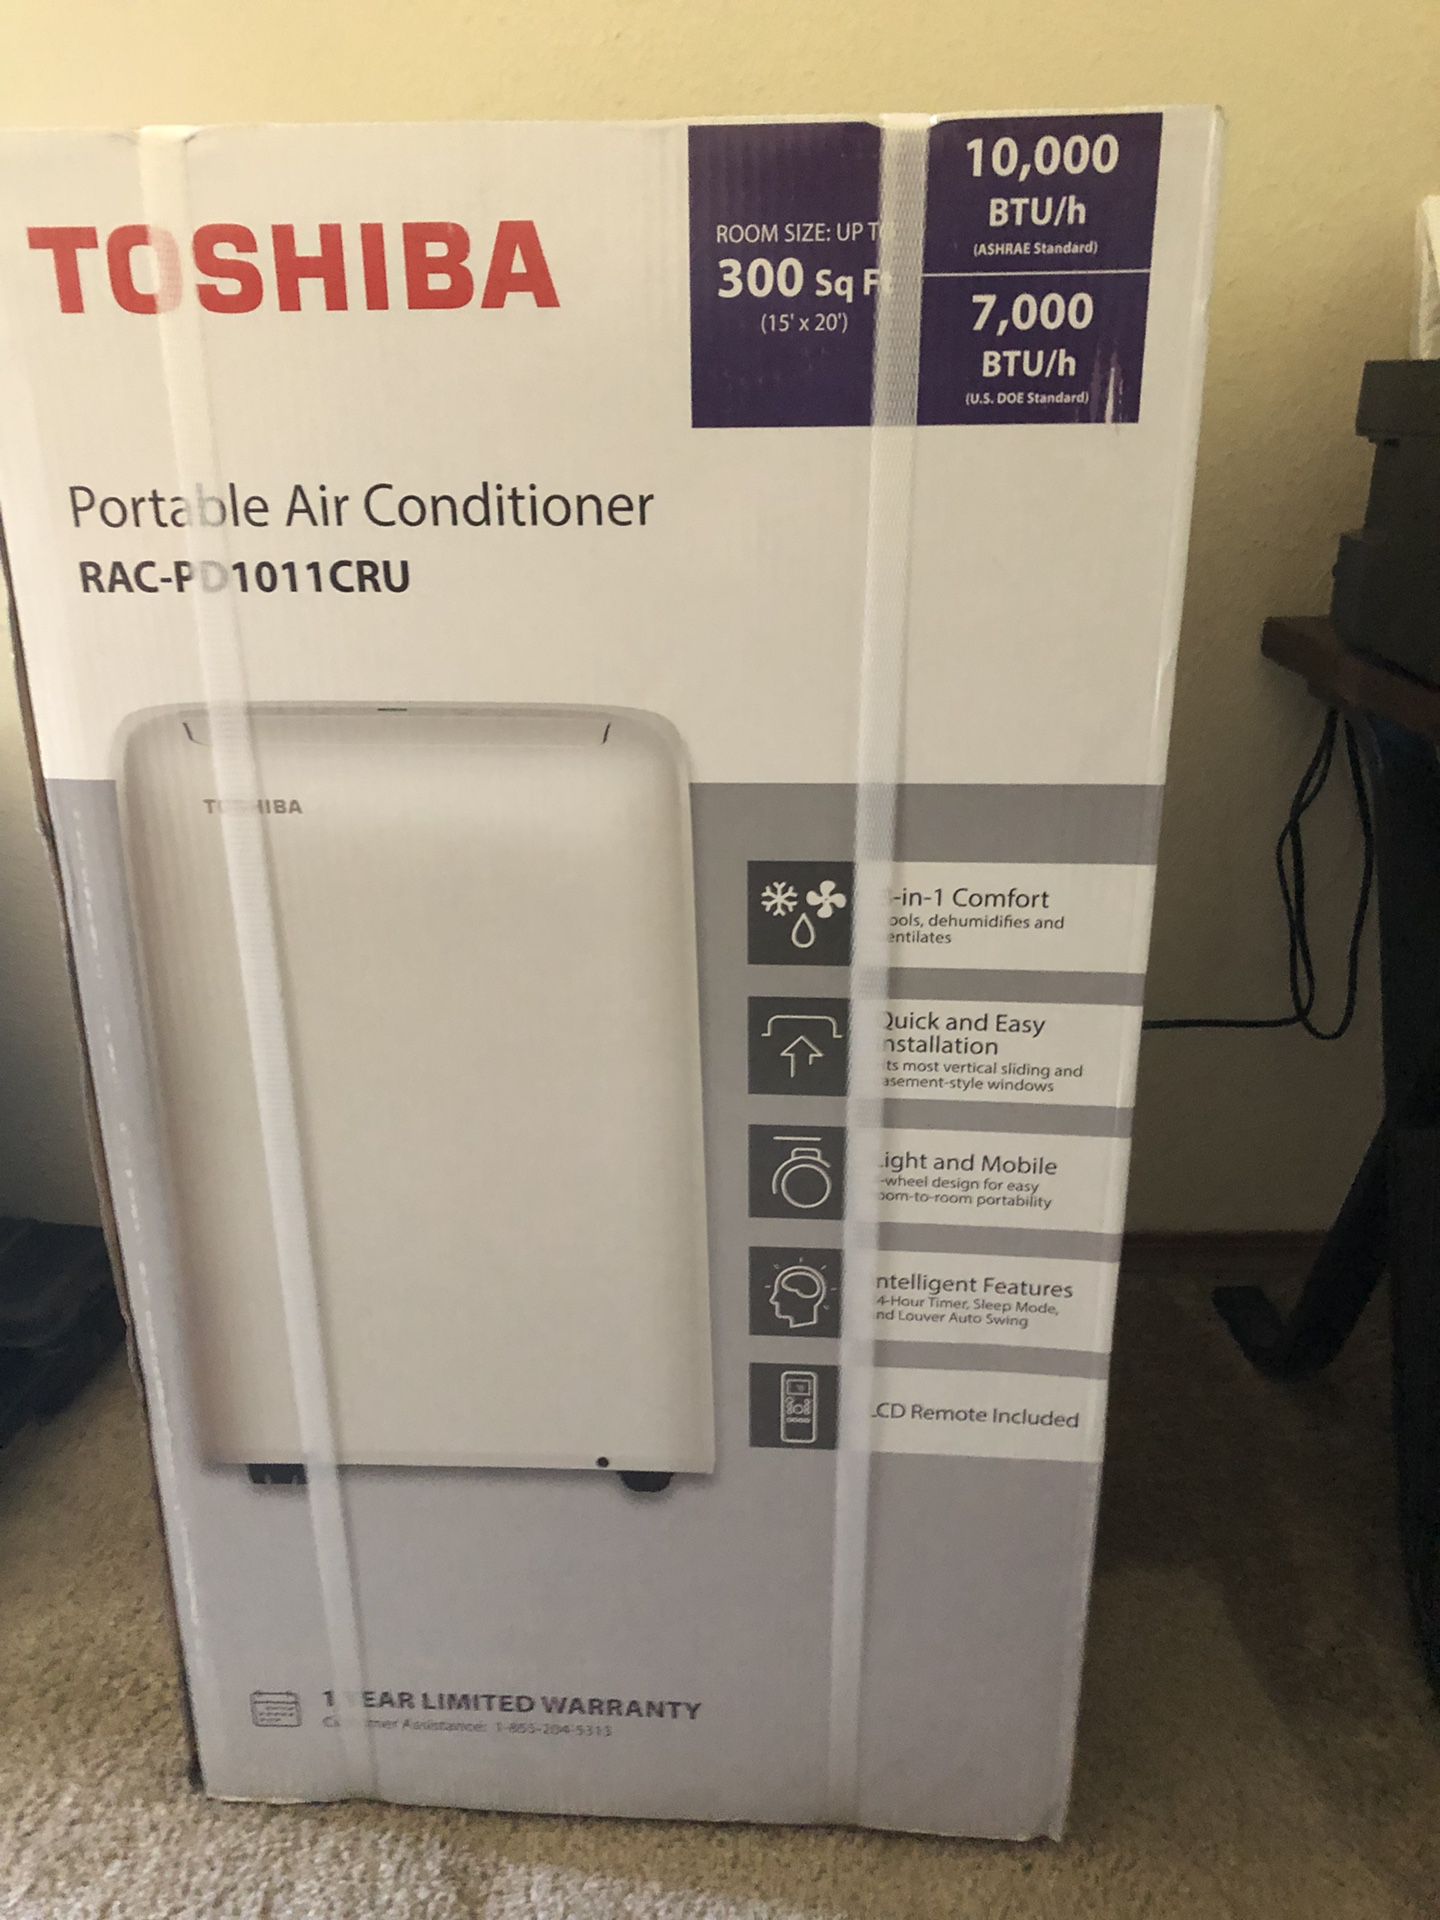 NEW IN BOX Toshiba 10,000BTU Portable Air Conditoner